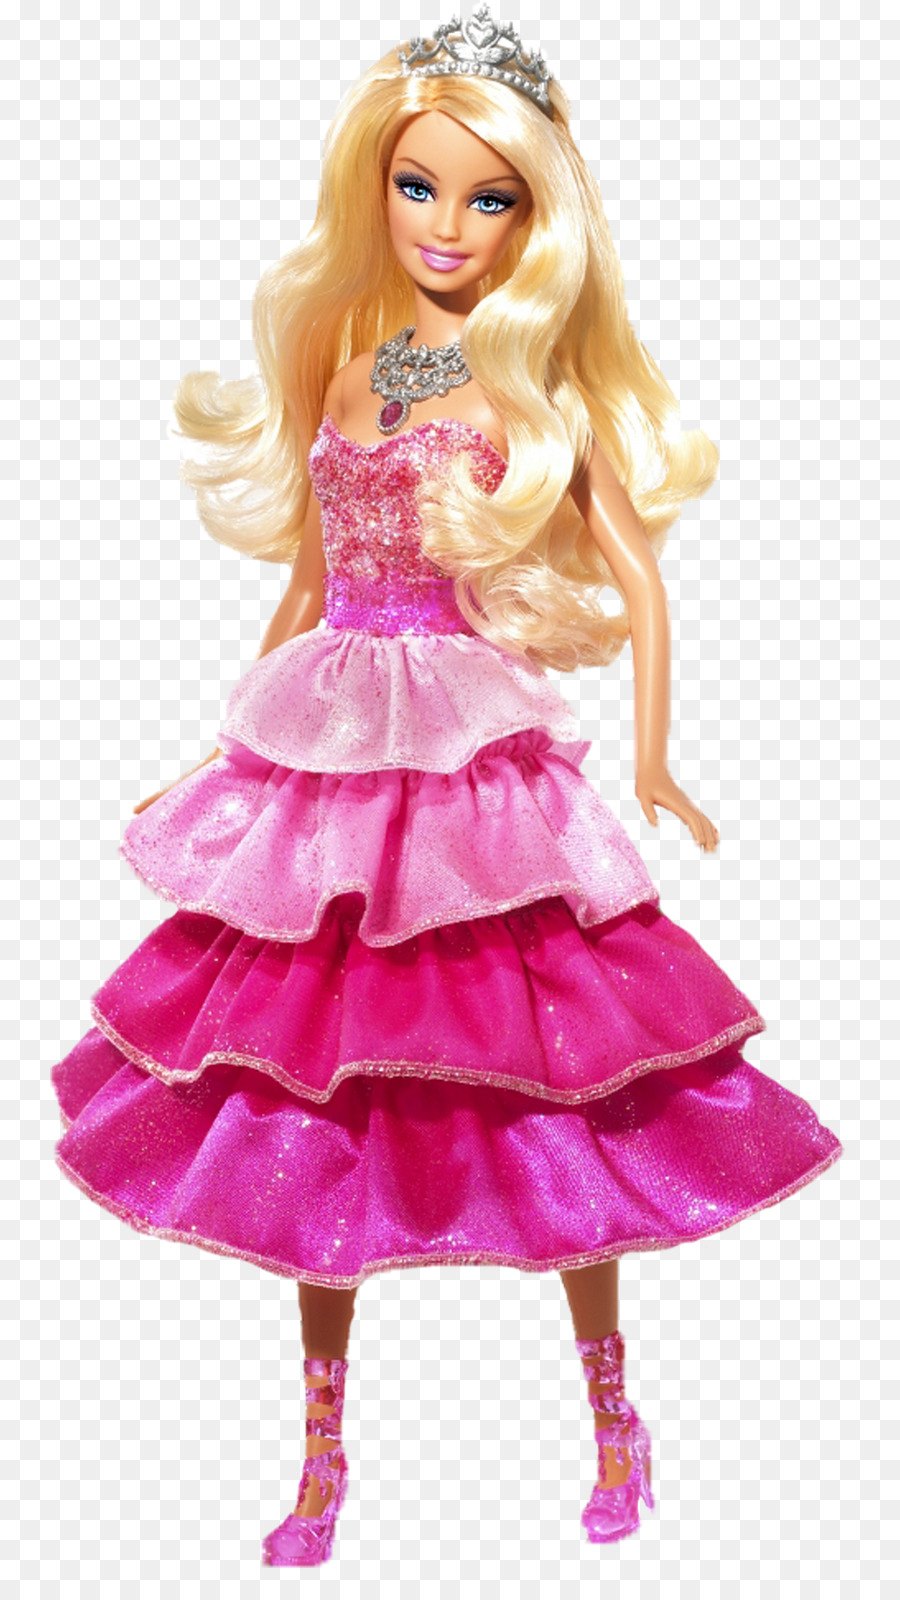 Ruth Xử Lý Barbie Amazon.com Con Búp Bê Đồ Chơi - barbie